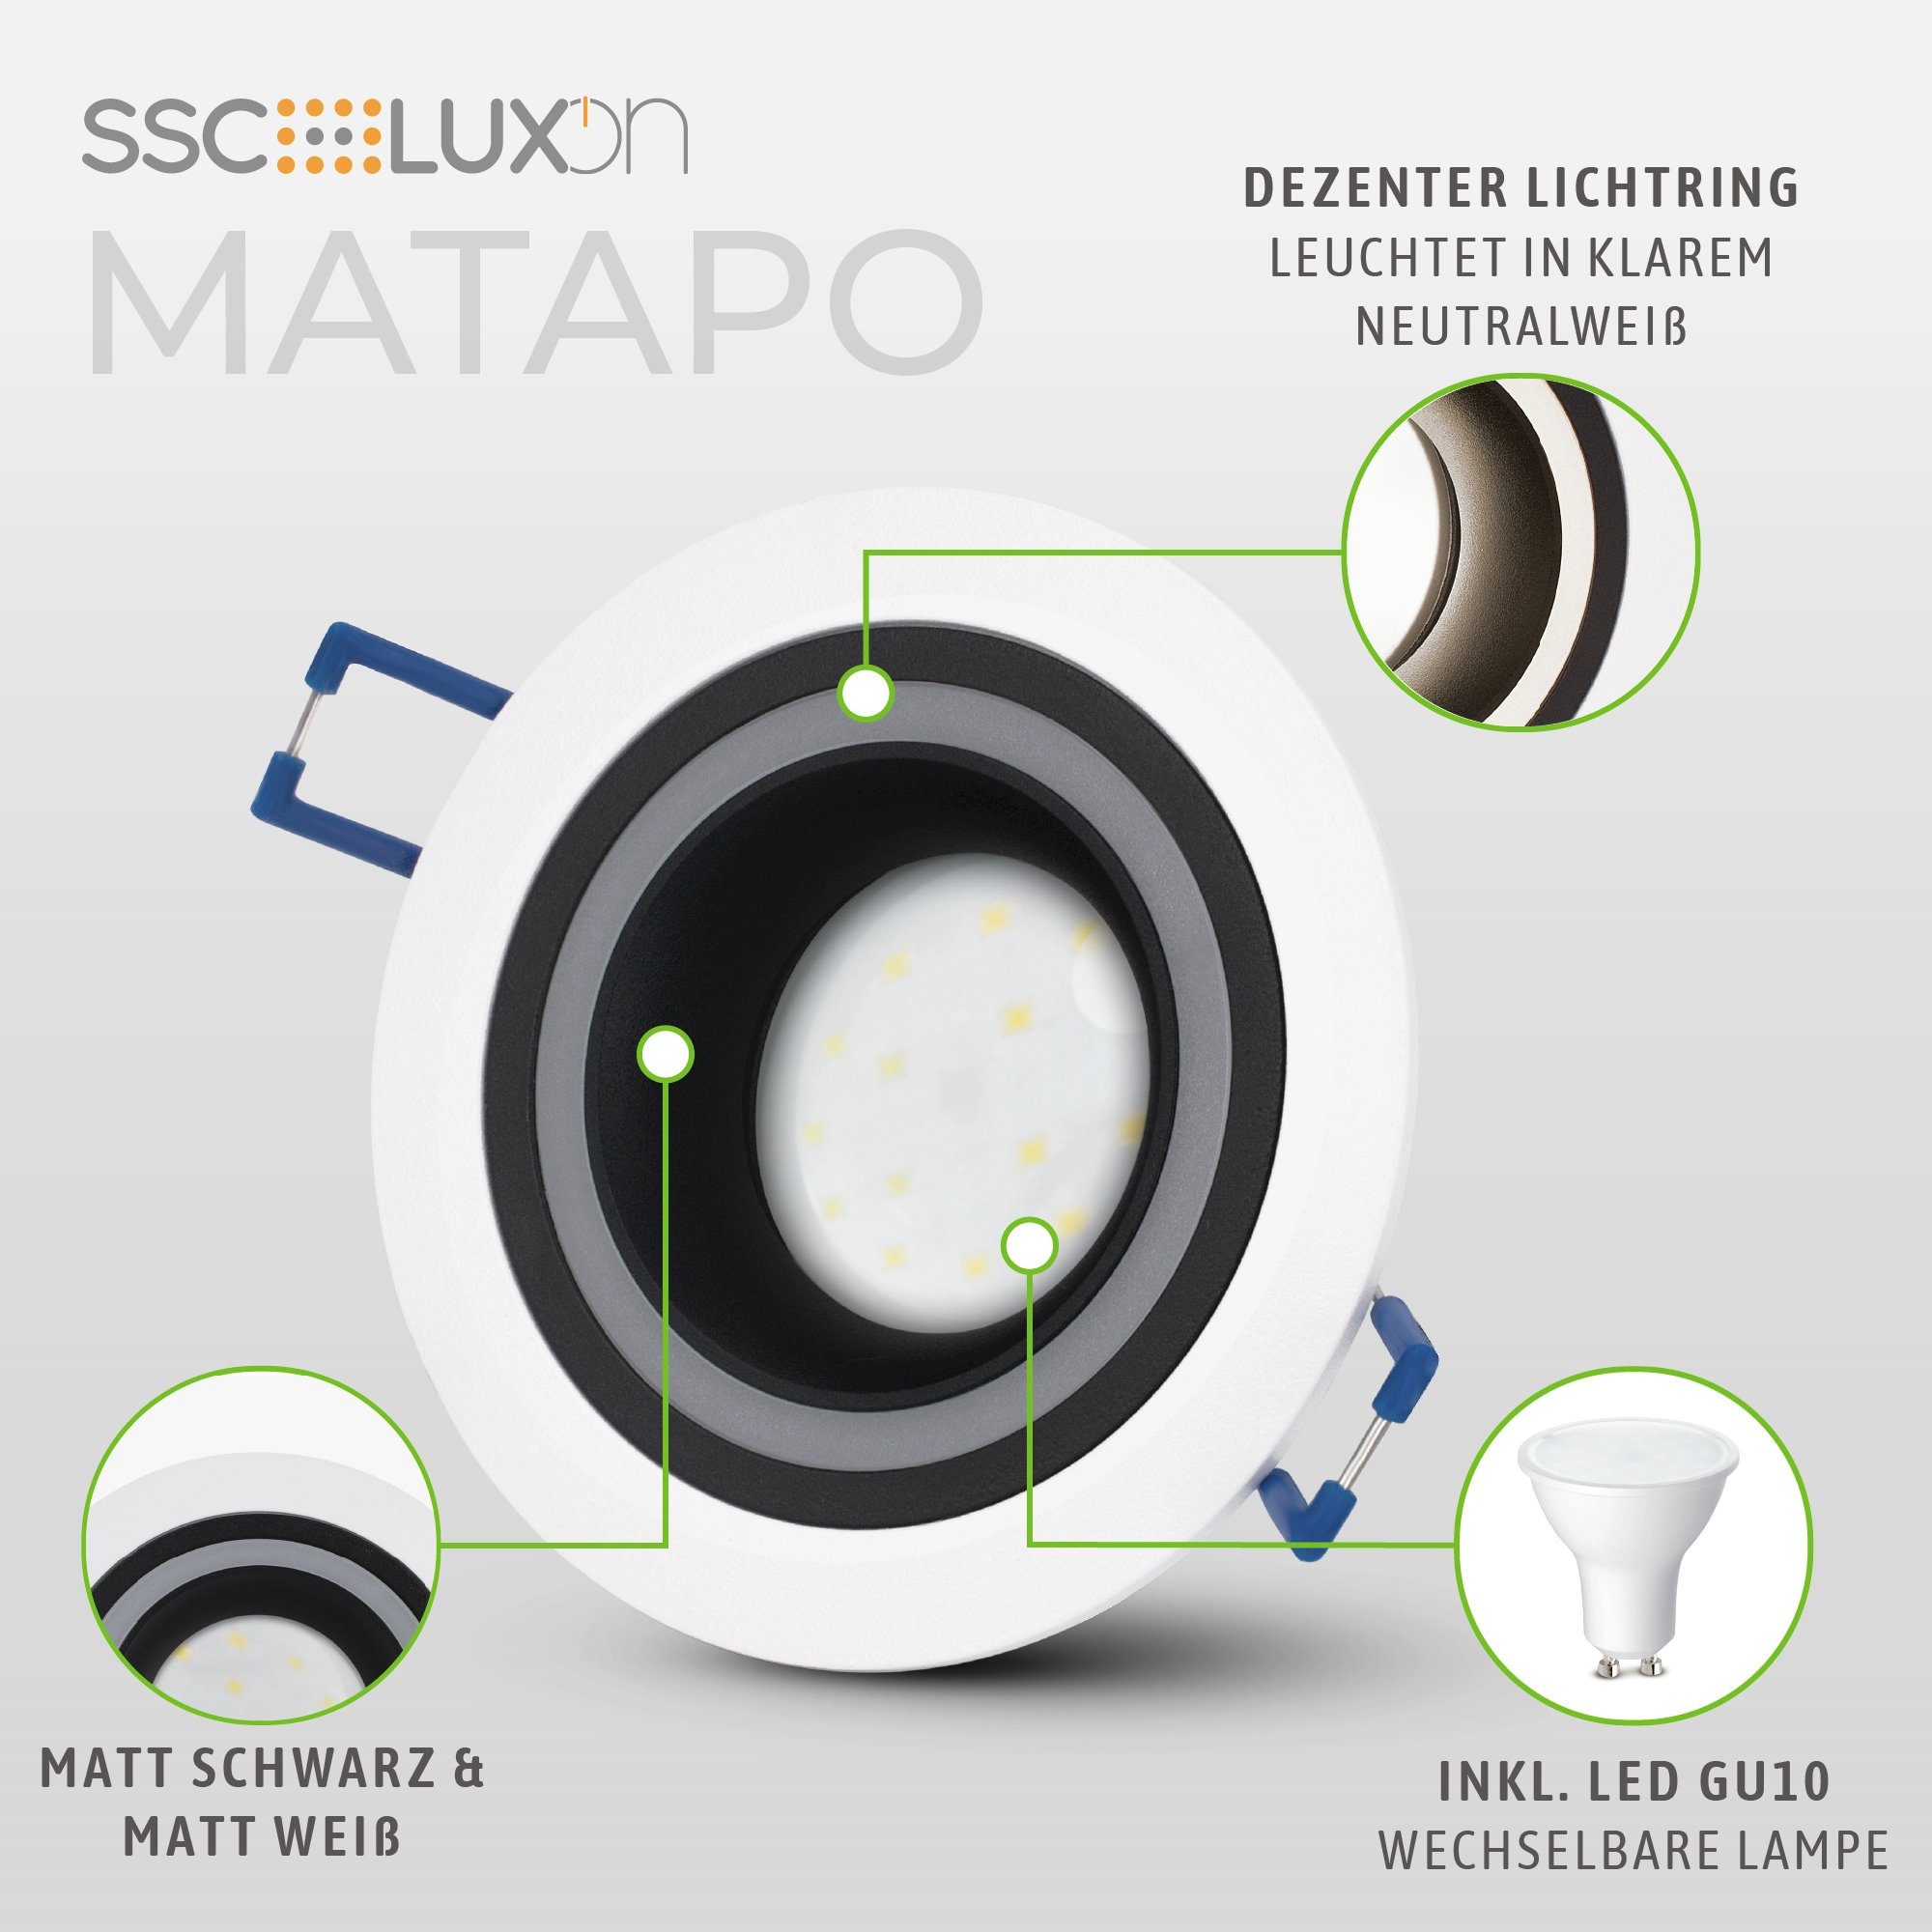 Einbaustrahler Leuchtmittel Design LED Neutralweiß schwarz LED Einbauspot GU10 Matapo weiss 5W, mit SSC-LUXon